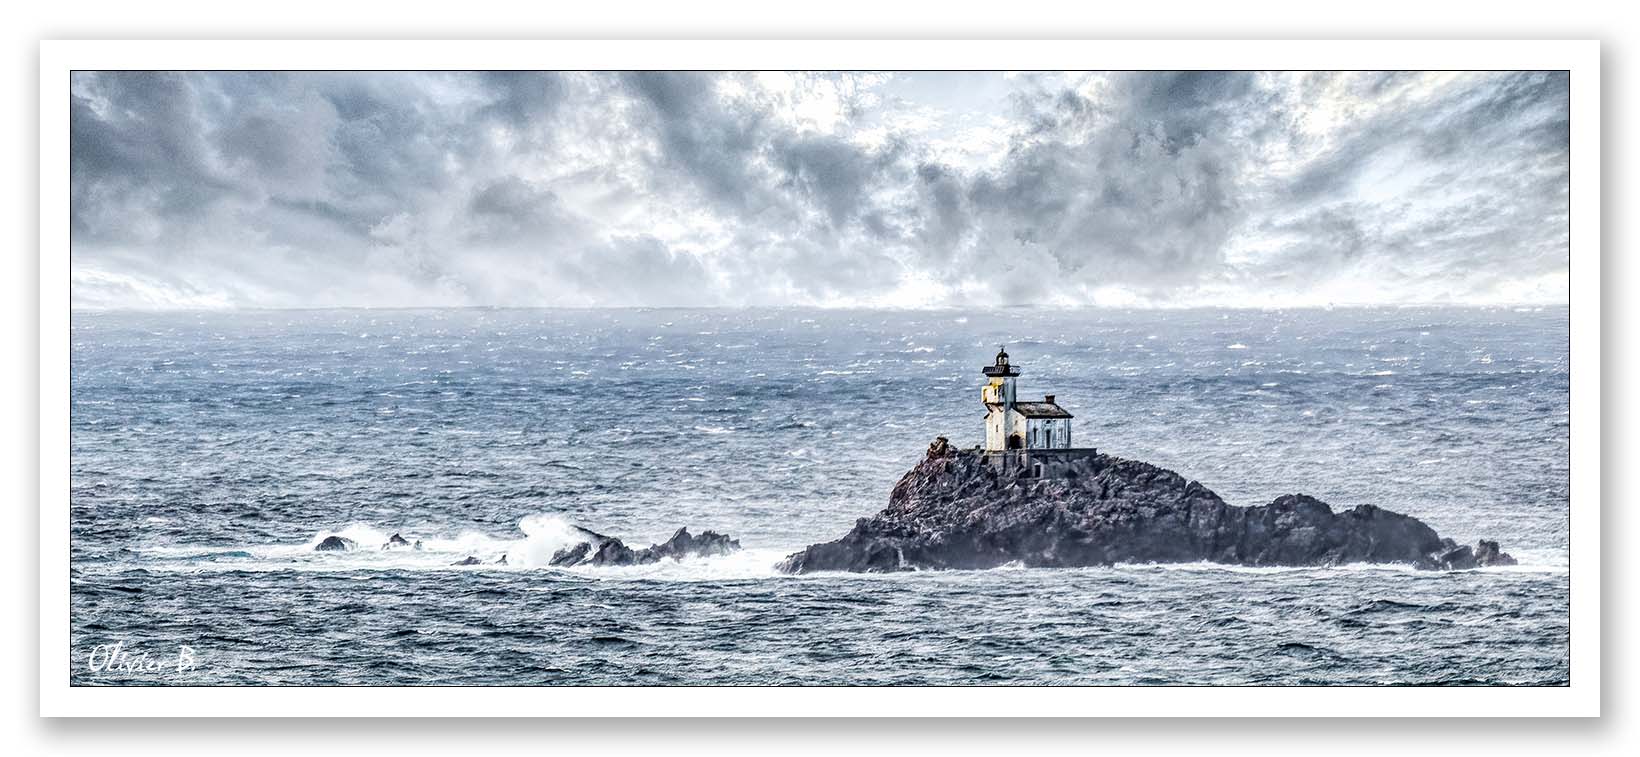 Le phare de Tevennec, gardien solitaire des navires à la pointe du raz, mystérieusement hanté